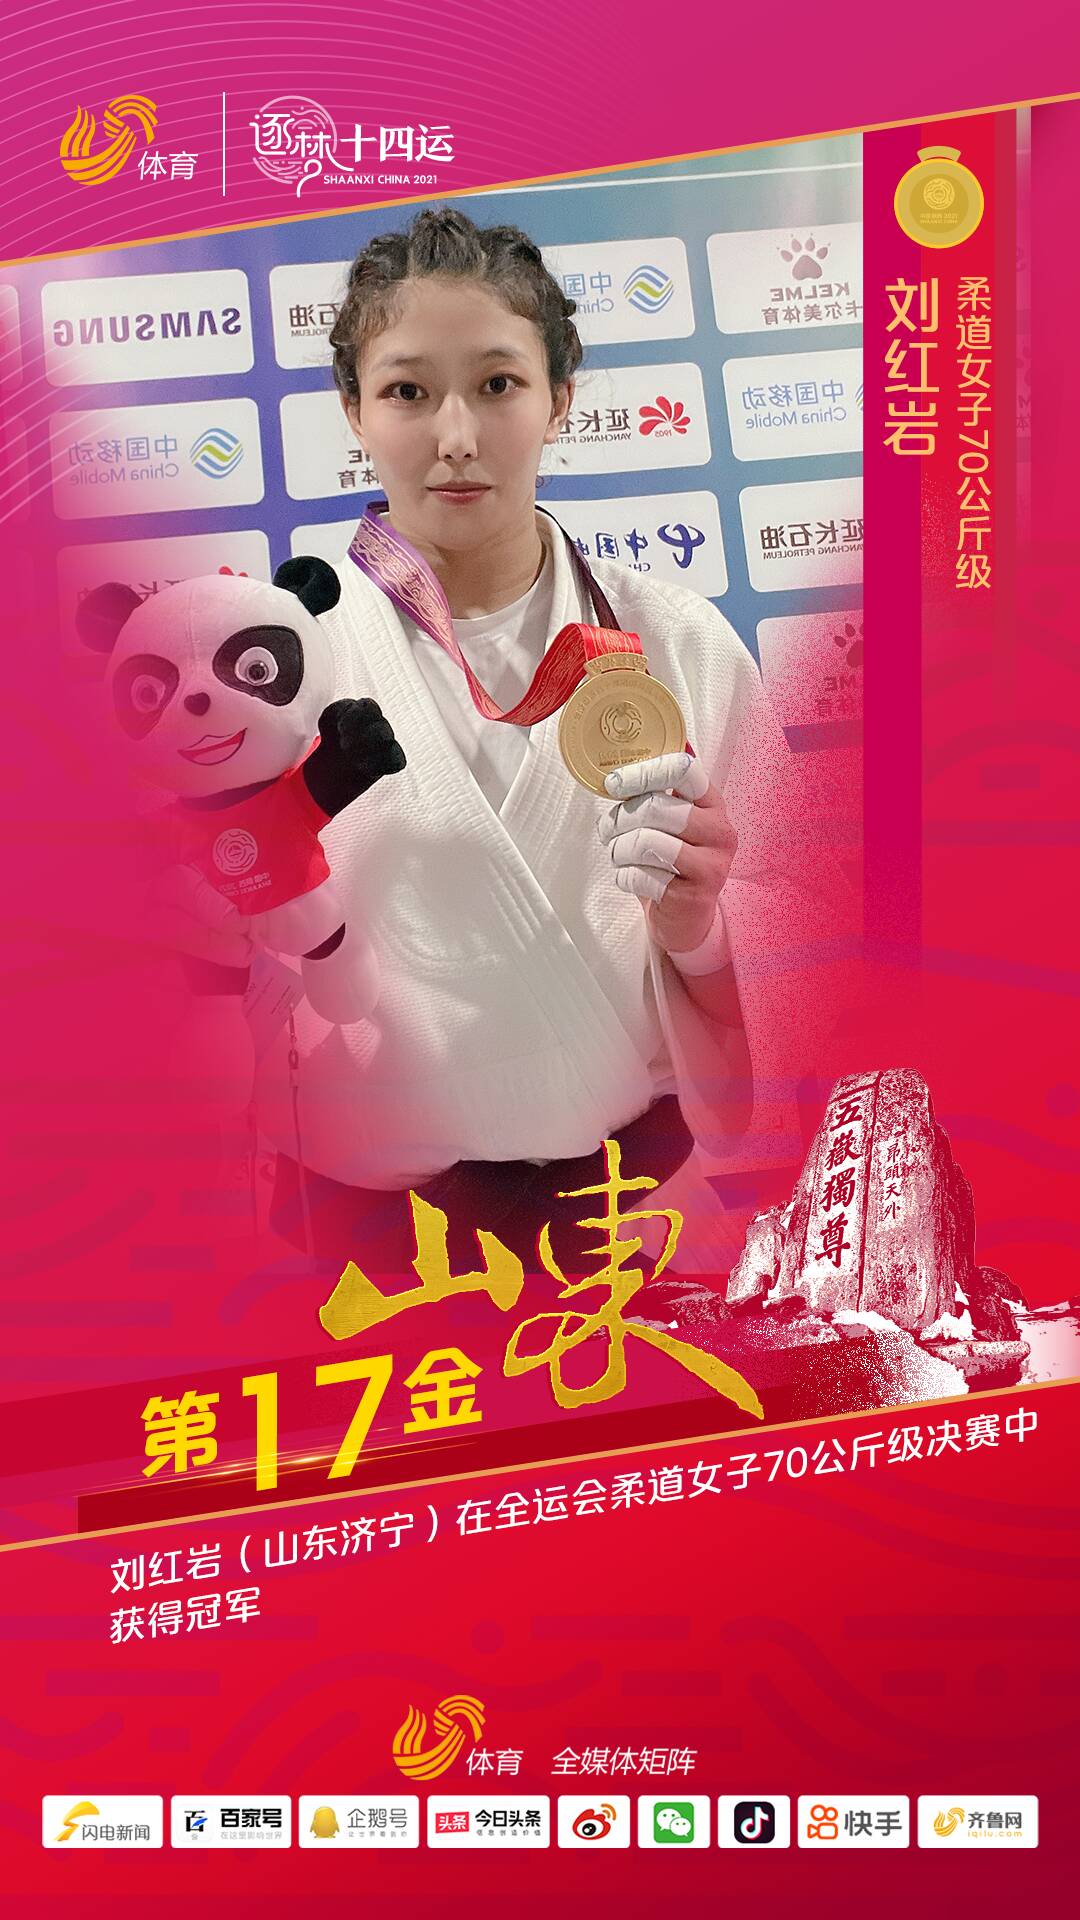 刘红岩获十四运柔道女子70公斤级冠军 赛后激动熊抱教练